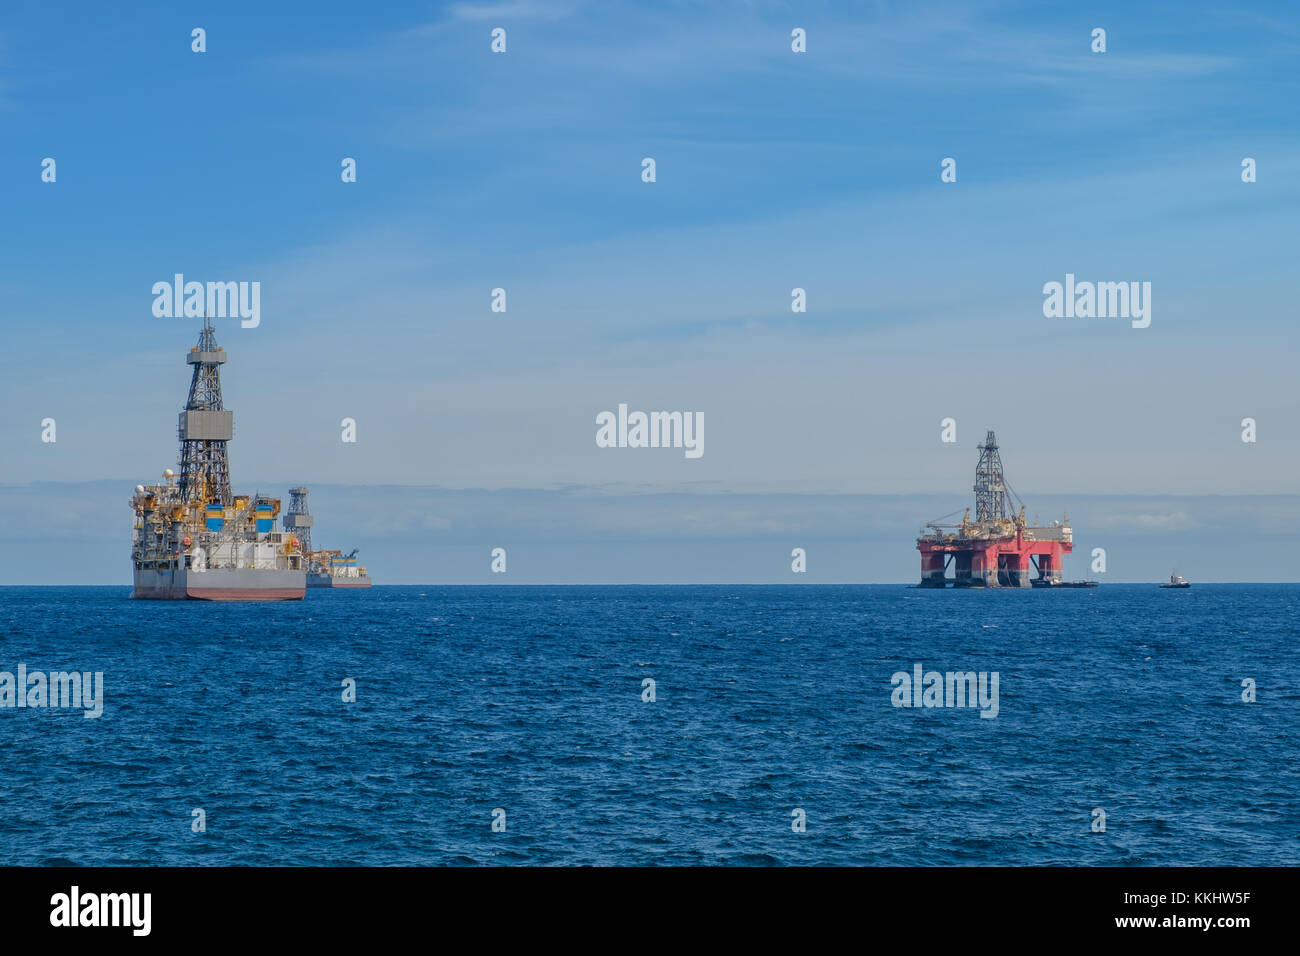 Schiff und Bohrplattform, offshore bohren Plattform am Ocean horizon Stockfoto